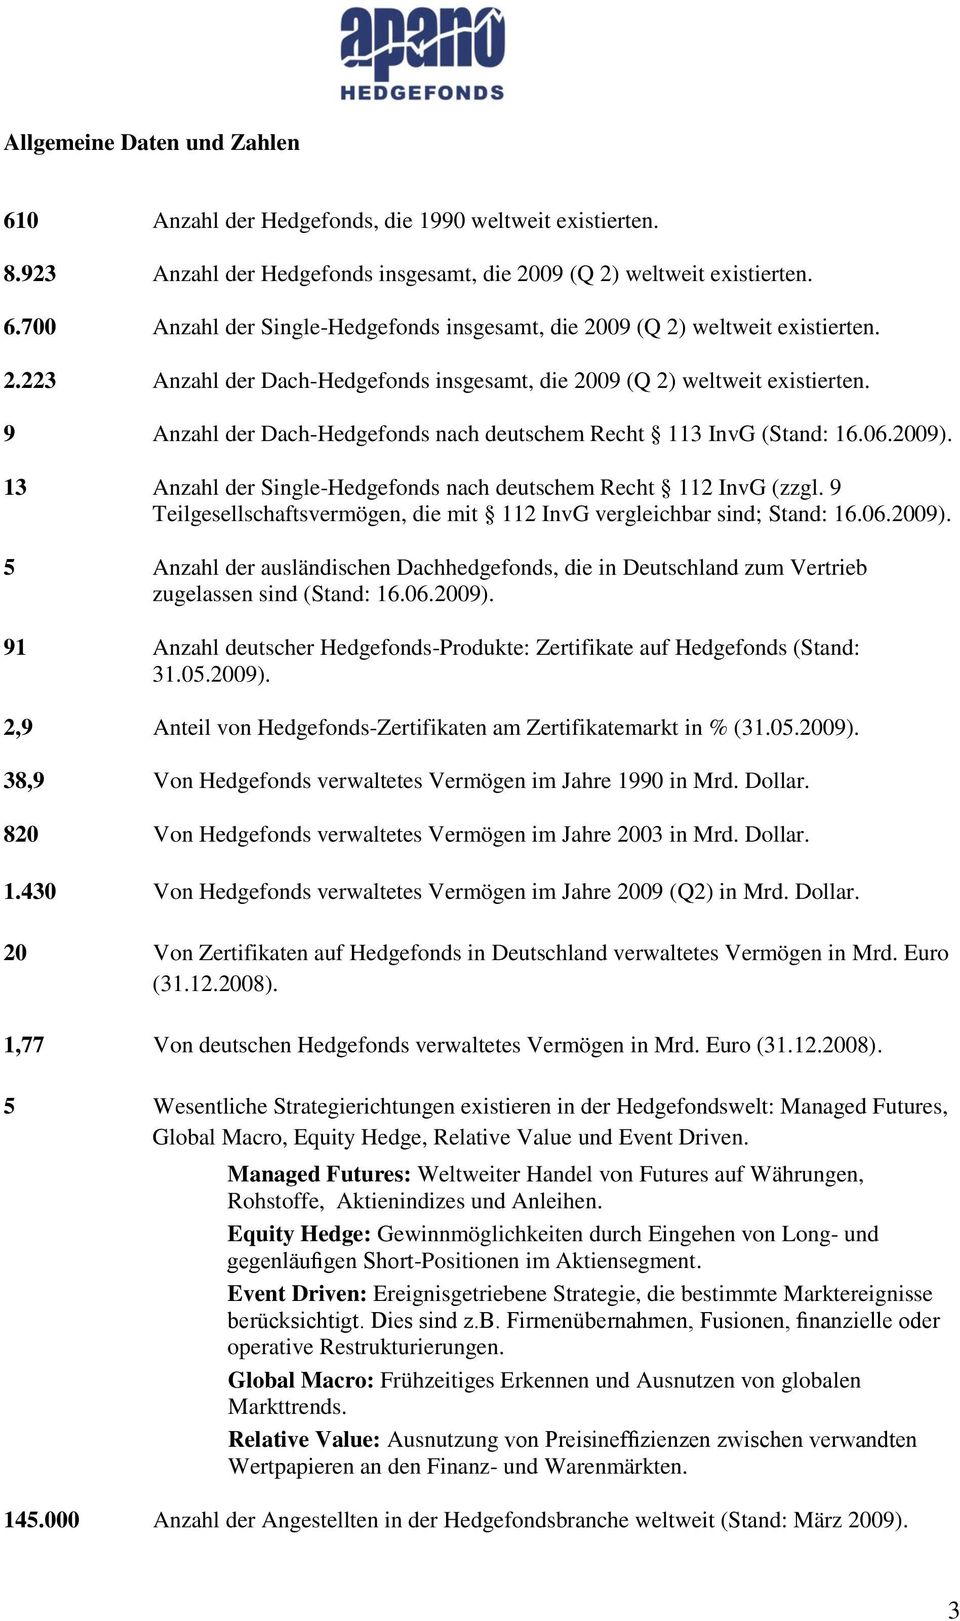 13 Anzahl der Single-Hedgefonds nach deutschem Recht 112 InvG (zzgl. 9 Teilgesellschaftsvermögen, die mit 112 InvG vergleichbar sind; Stand: 16.06.2009).